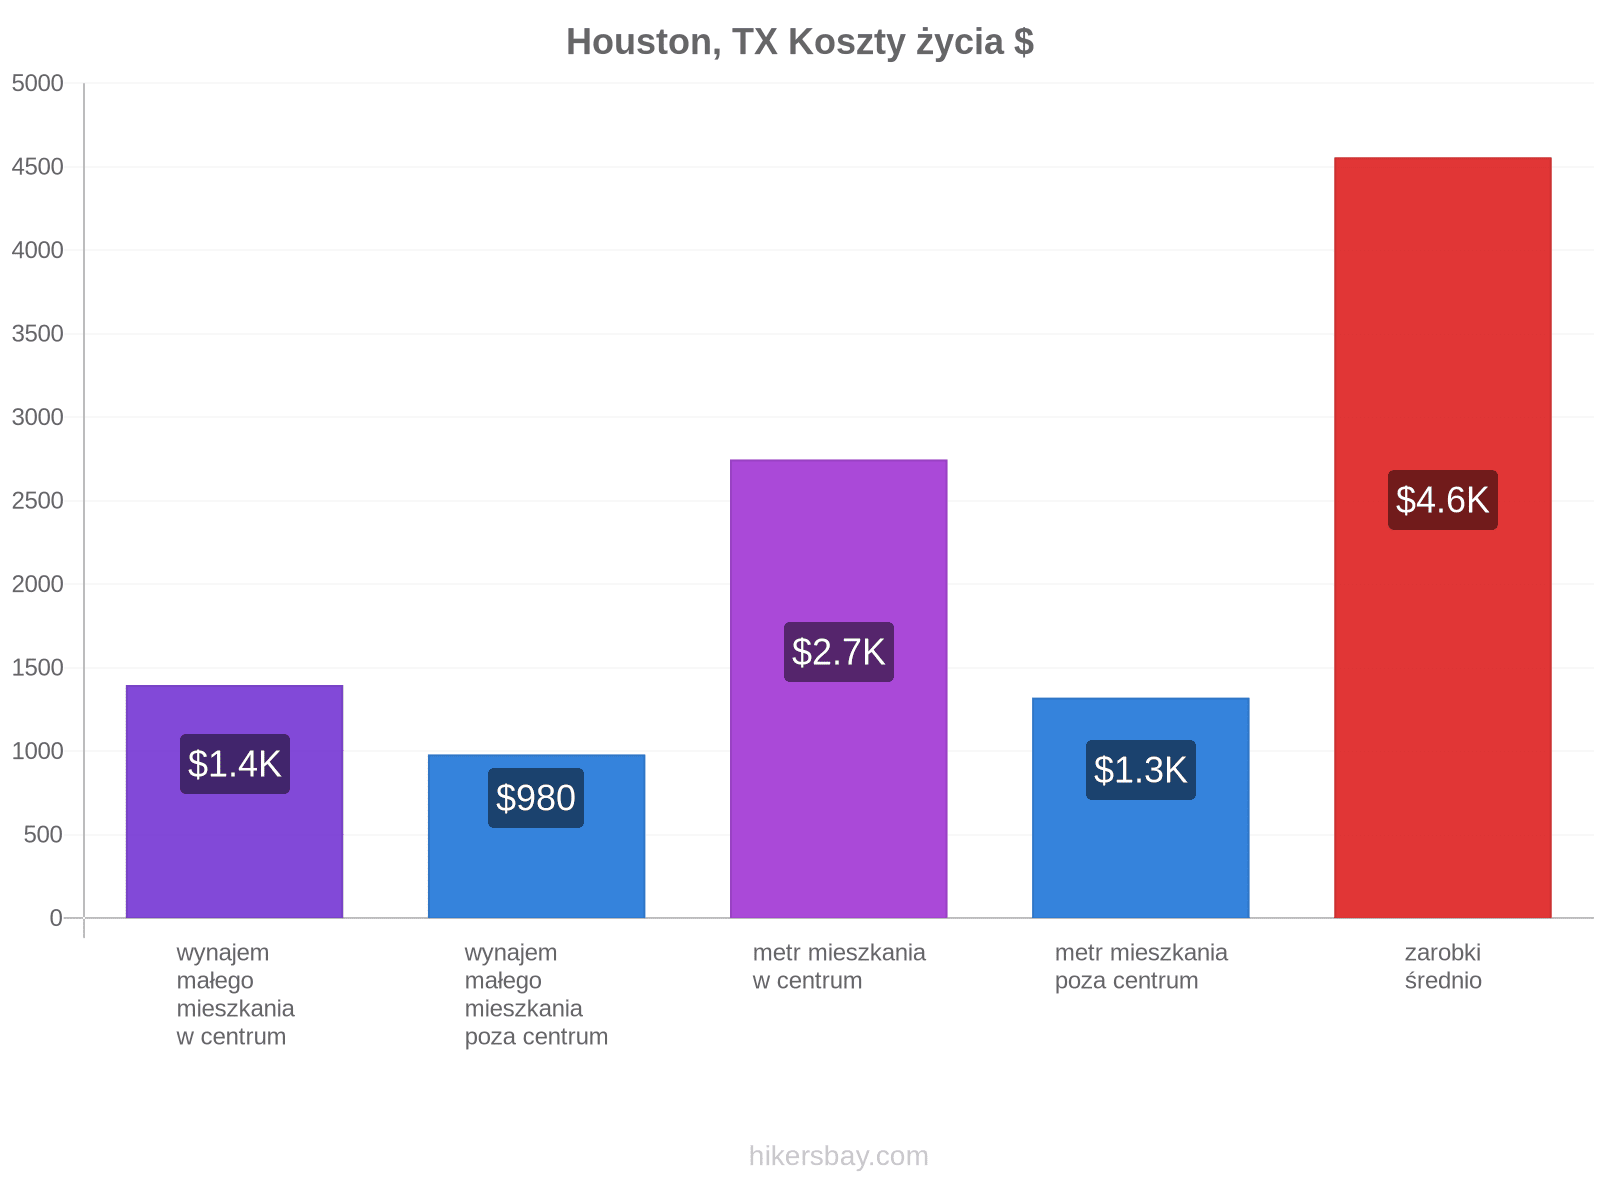 Houston, TX koszty życia hikersbay.com